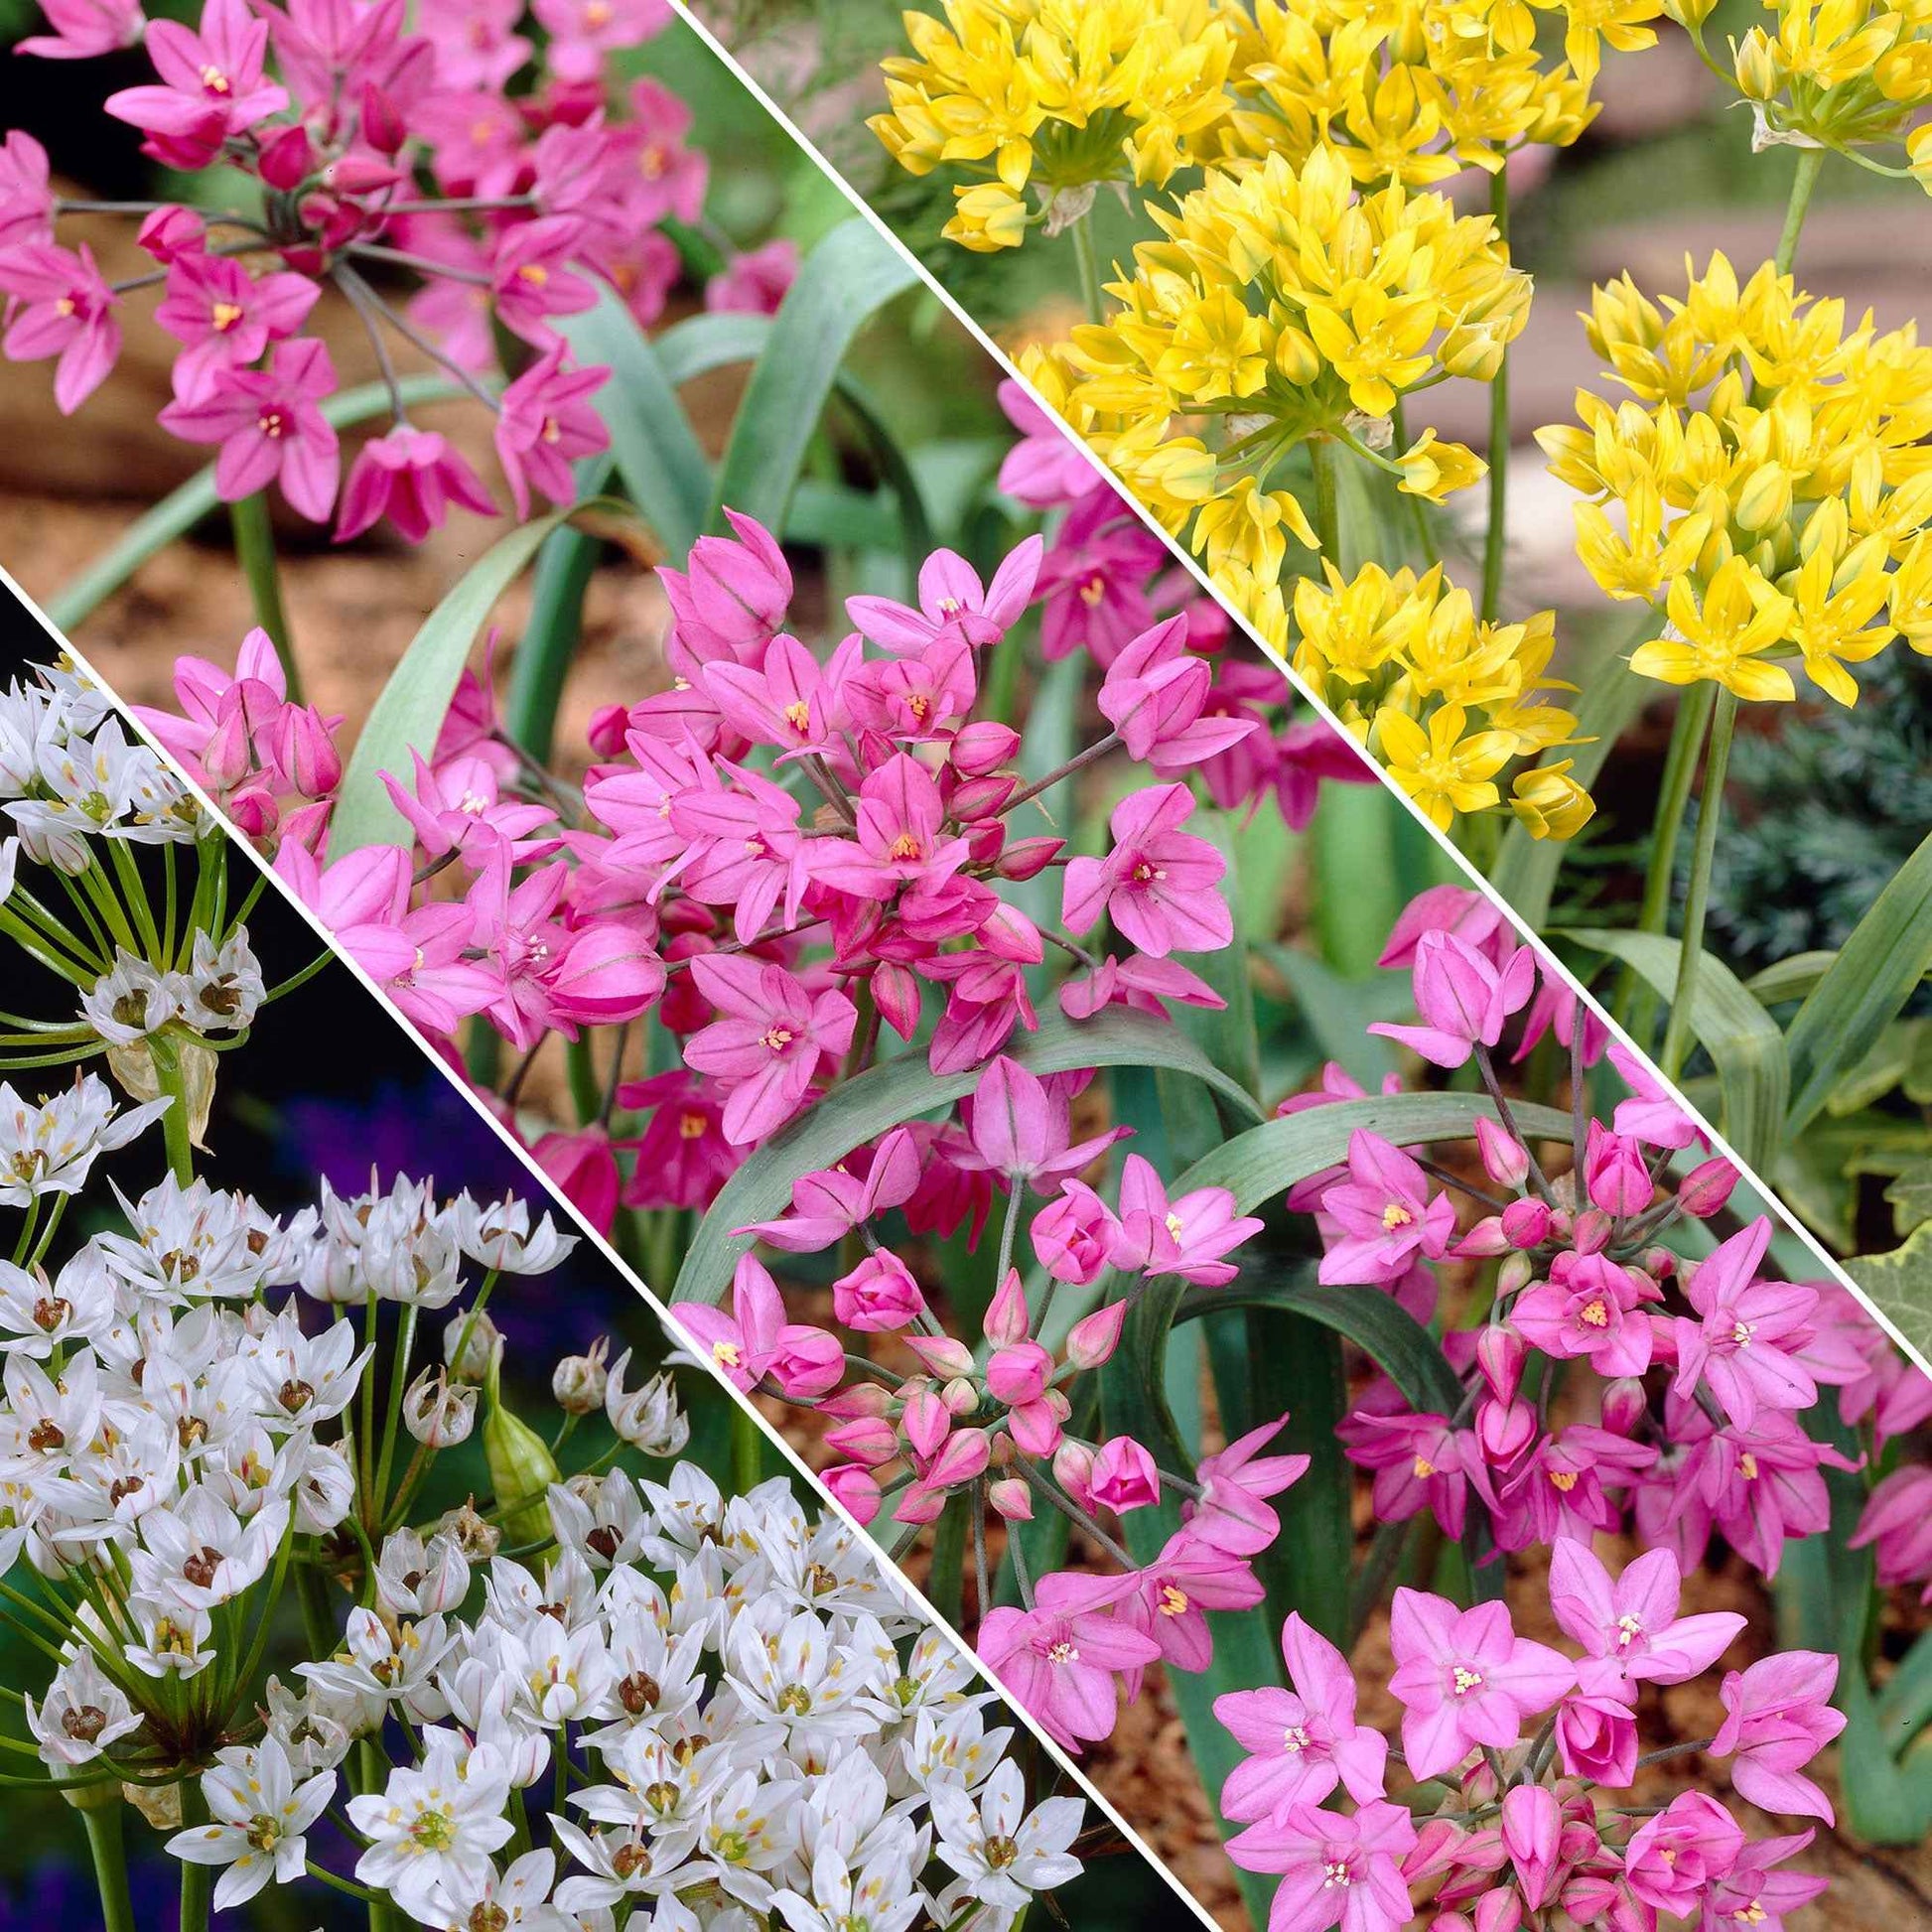 200x Zierzwiebel Allium - Mischung 'Butterfly' gelb-weiβ-rosa Gelb-Weiß-Rosa - Alle beliebten Blumenzwiebeln